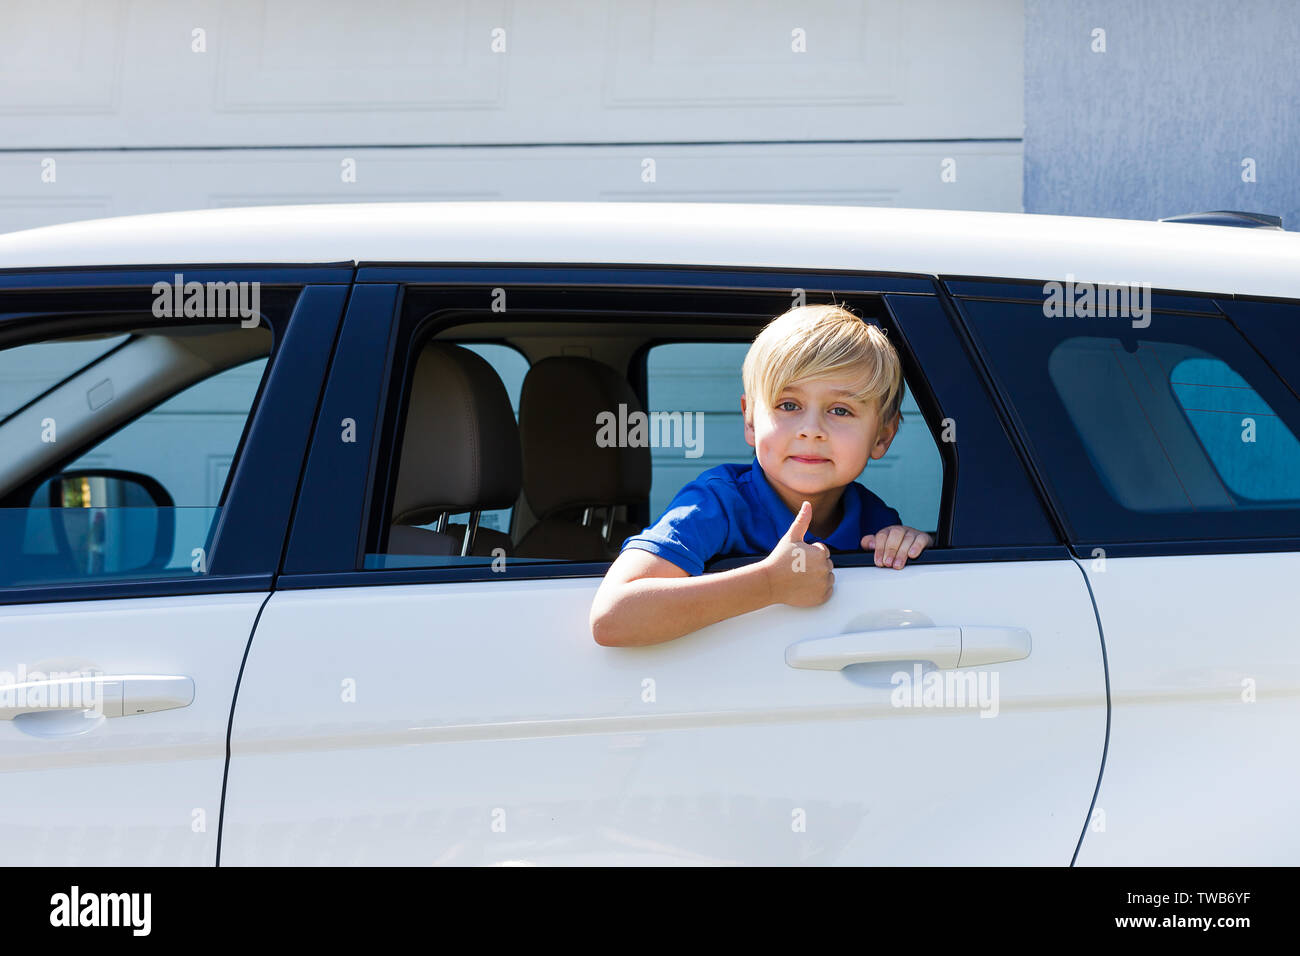 Песни мальчик на машине. Машины для мальчиков. Машины мальчишки. Дети в окне машины. Машина мальчик стиль.